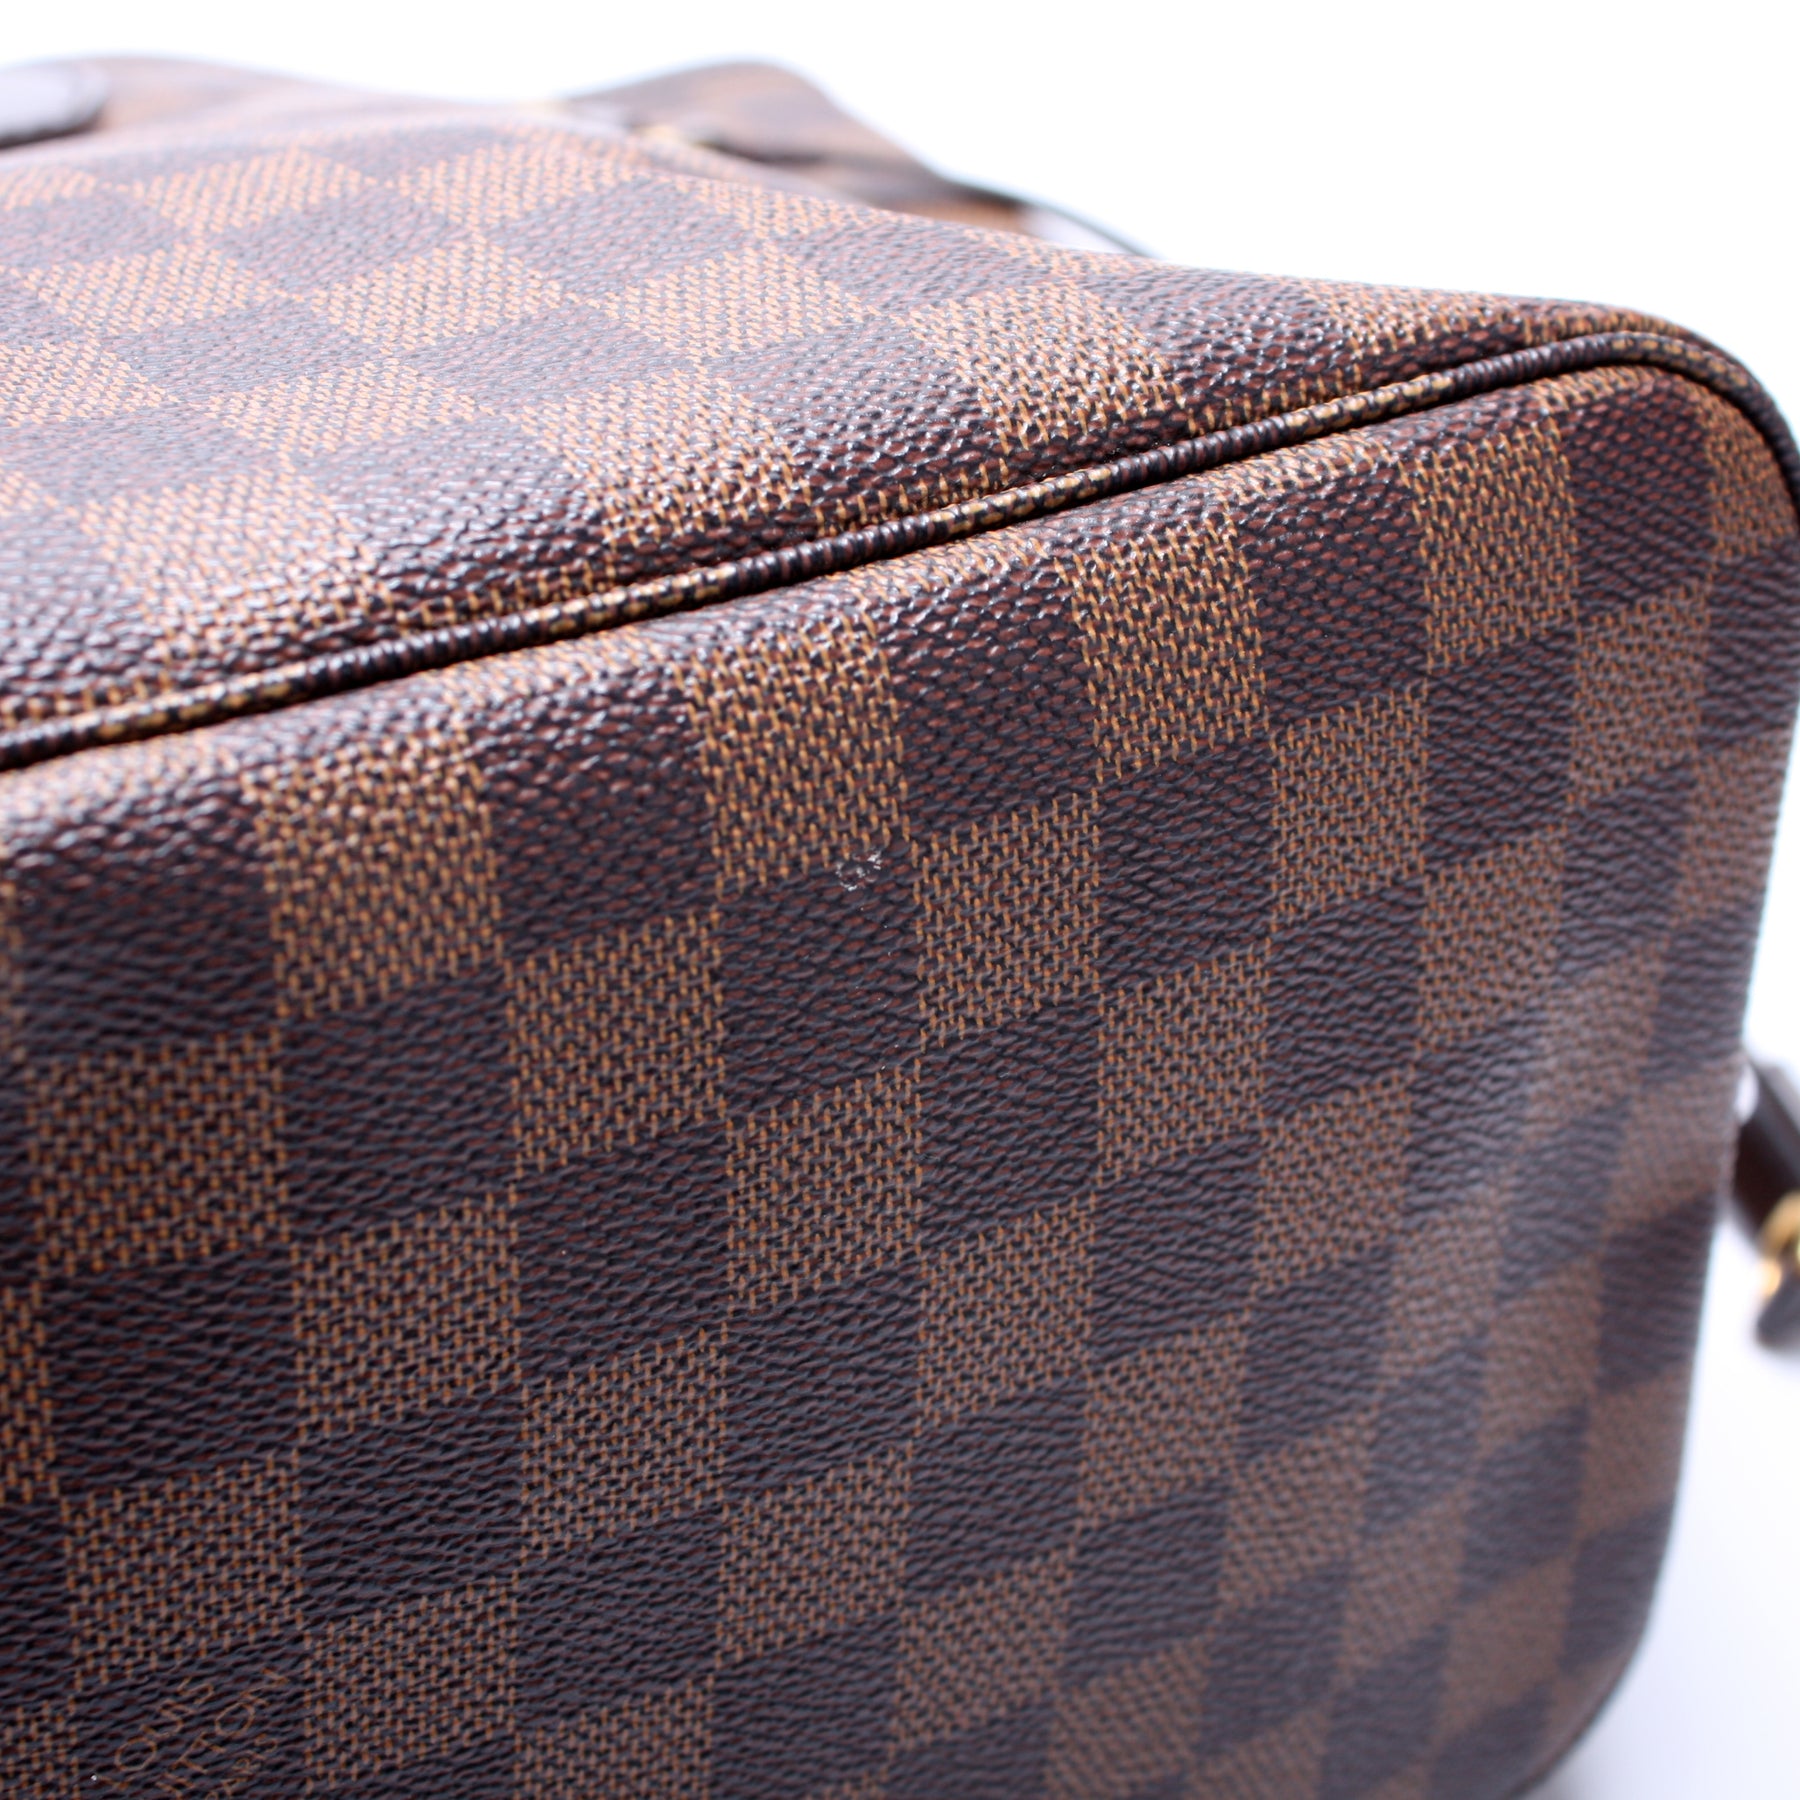 Neverfull MM Damier Ebene Travel Patch – Keeks Designer Handbags